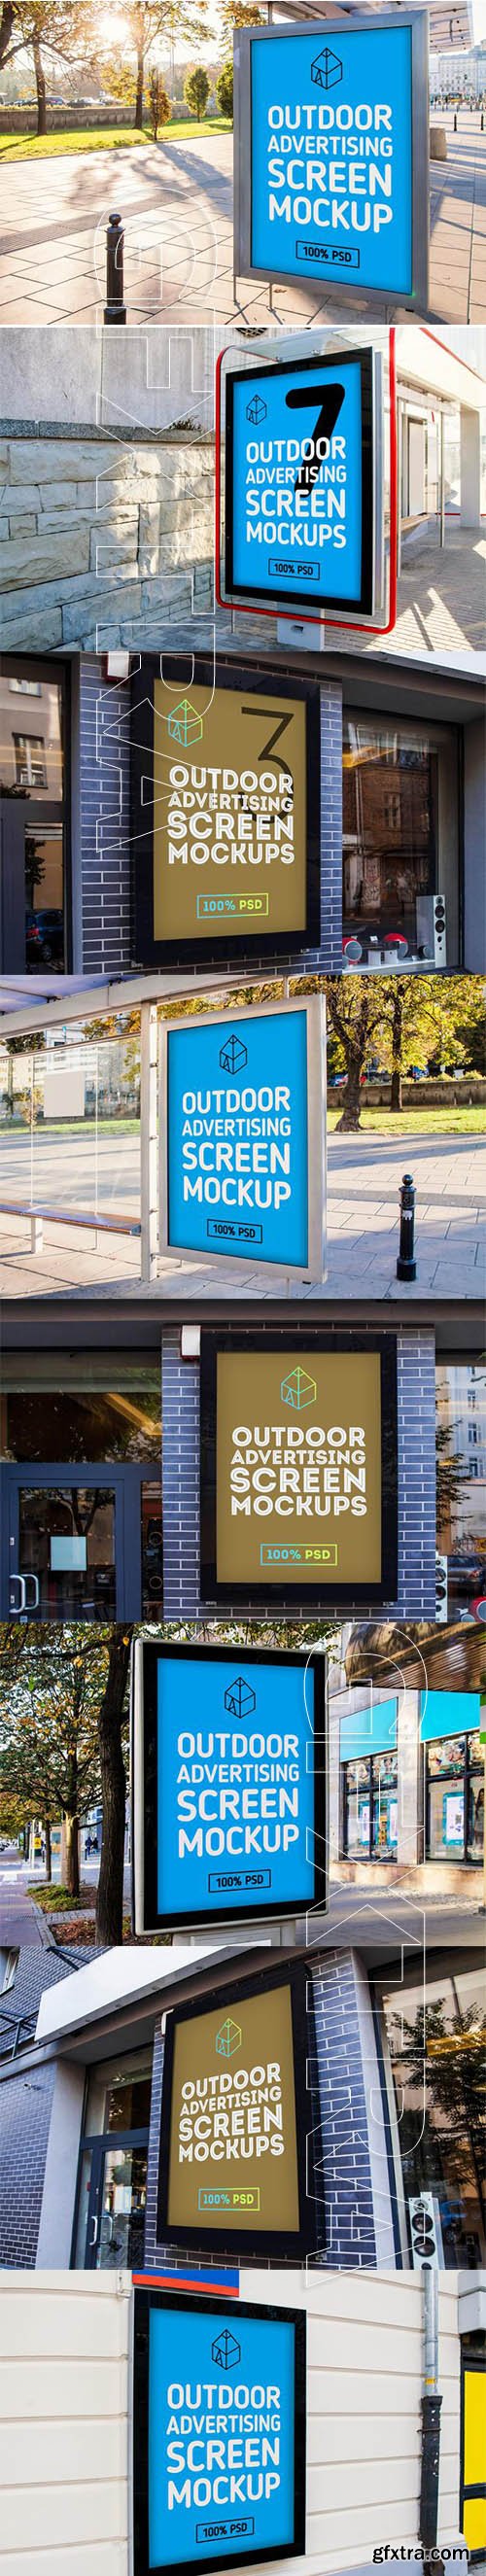 Outdoor Advertising Screen mock-up